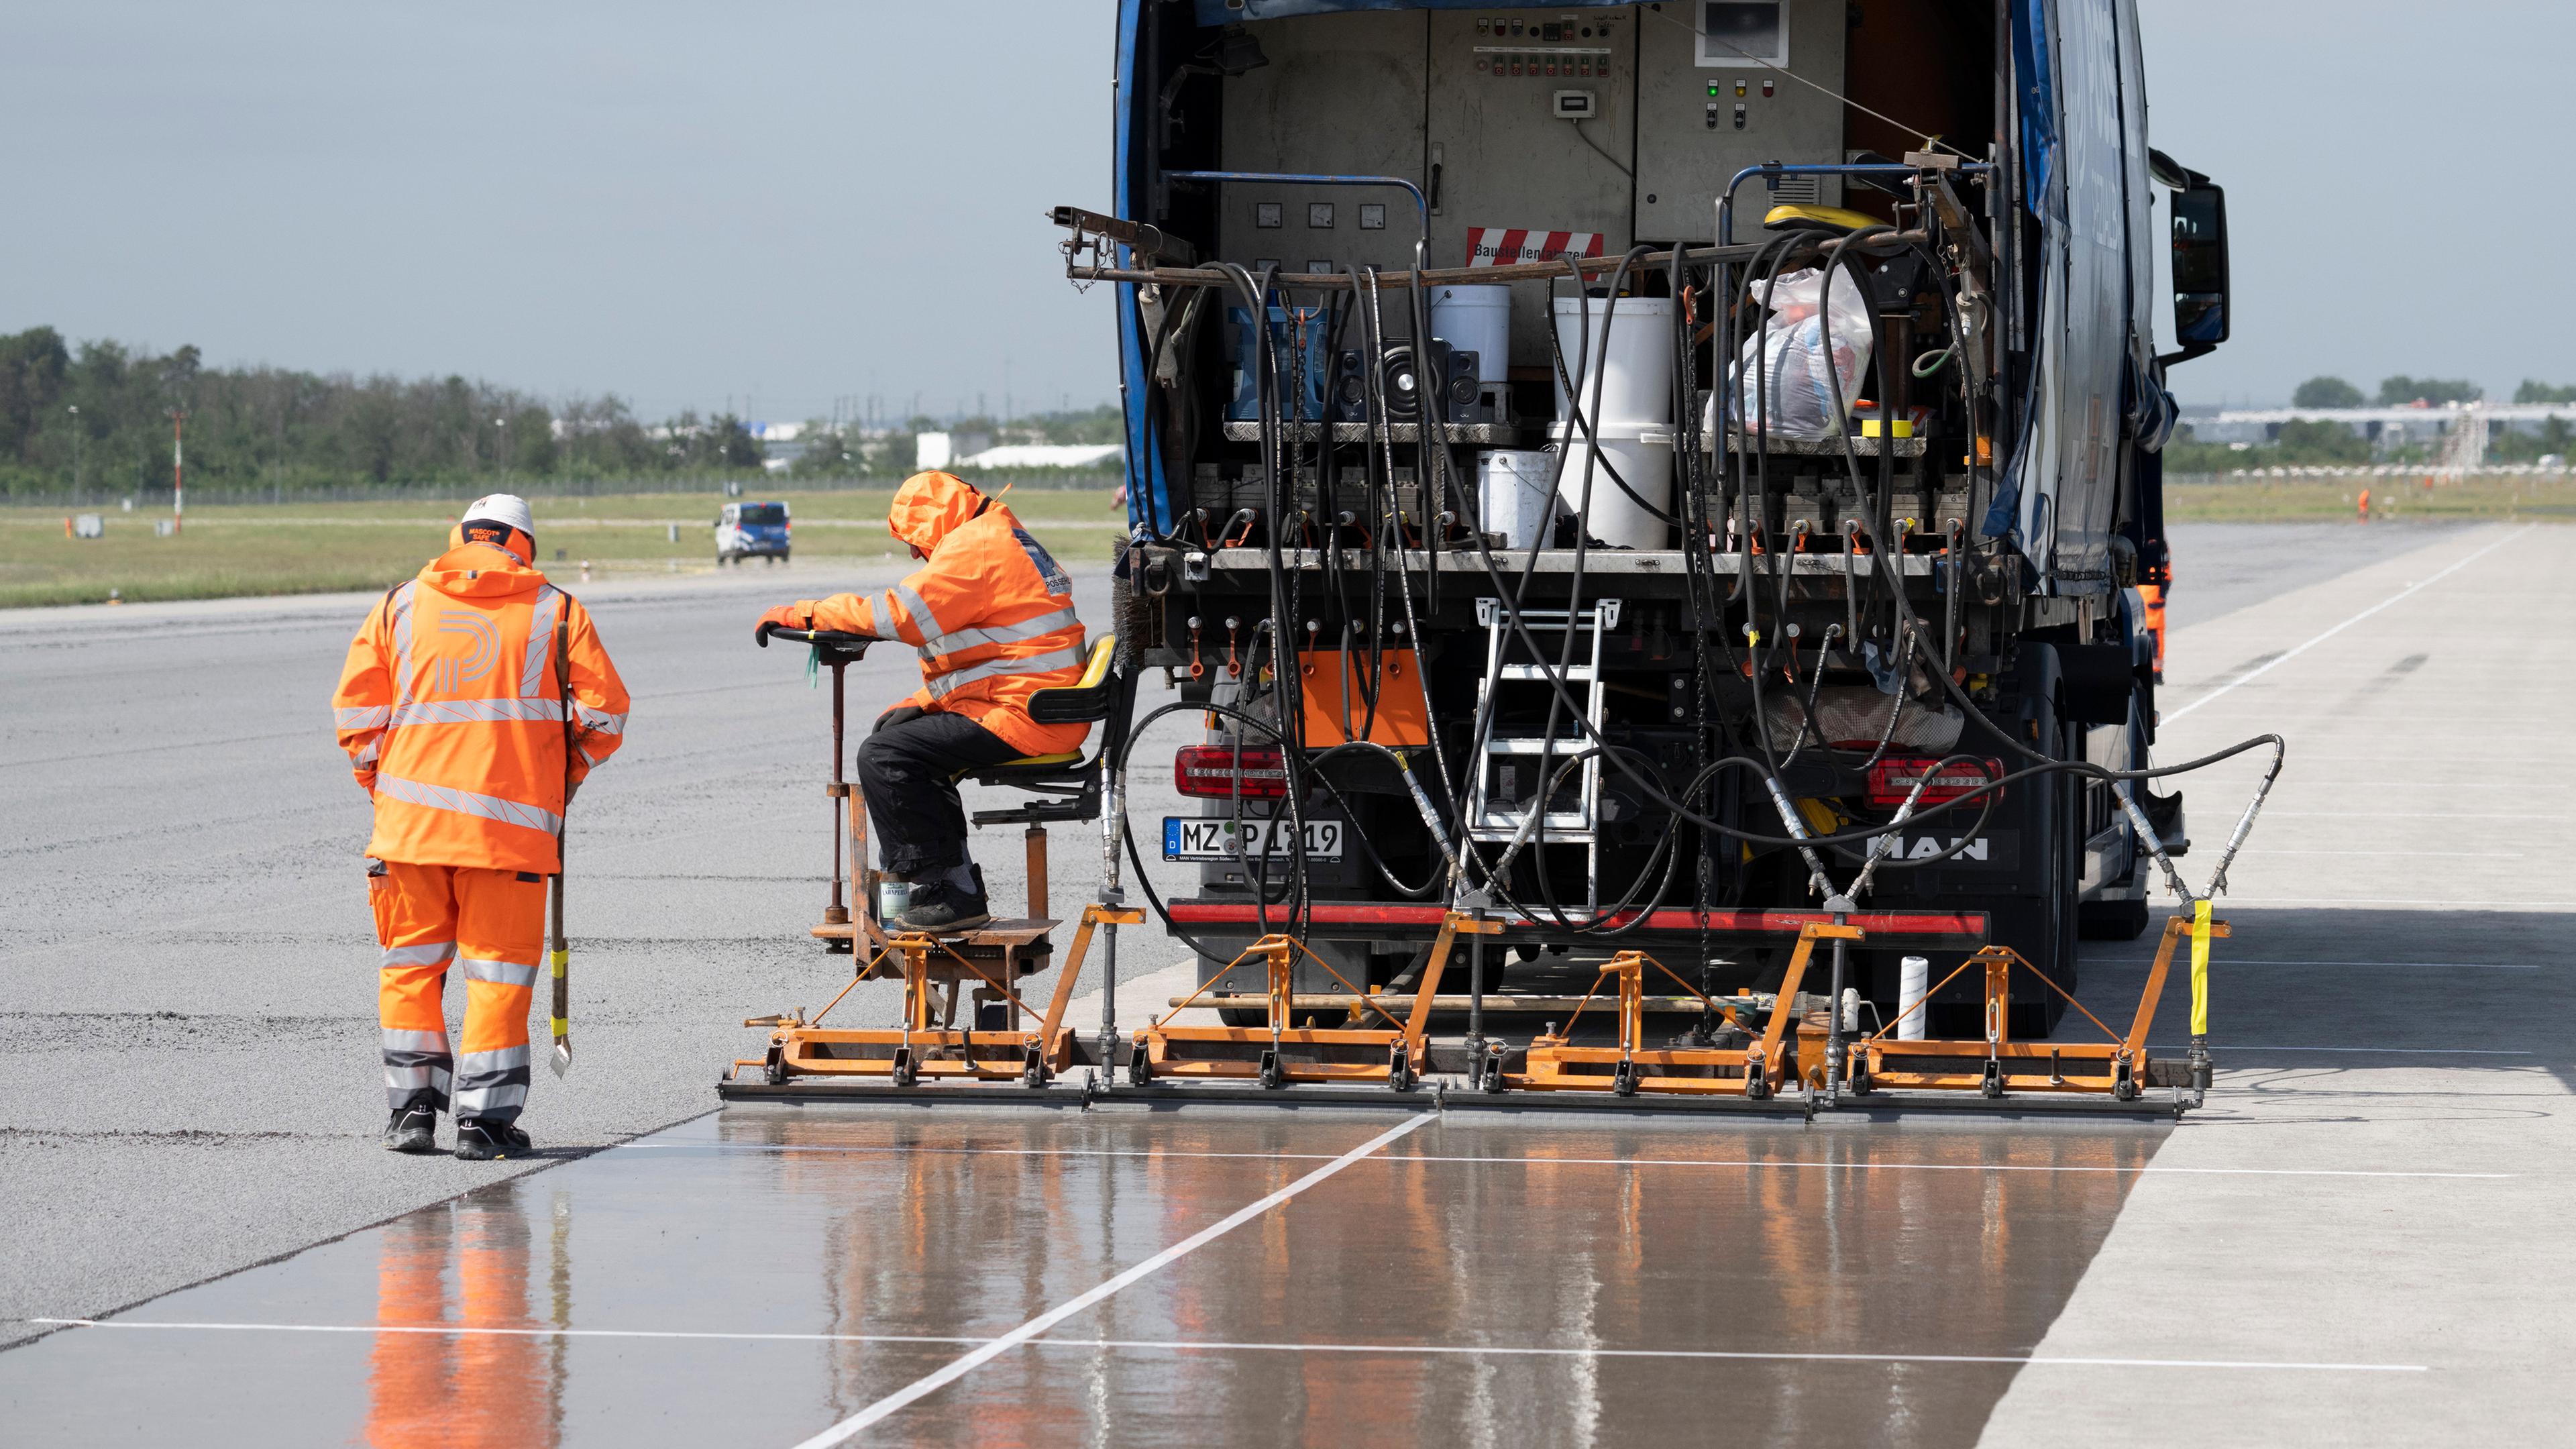 Ein Fahrzeug und zwei Arbeiter in orangenen Anzügen bringen eine Grundierung auf einer Landebahn an.